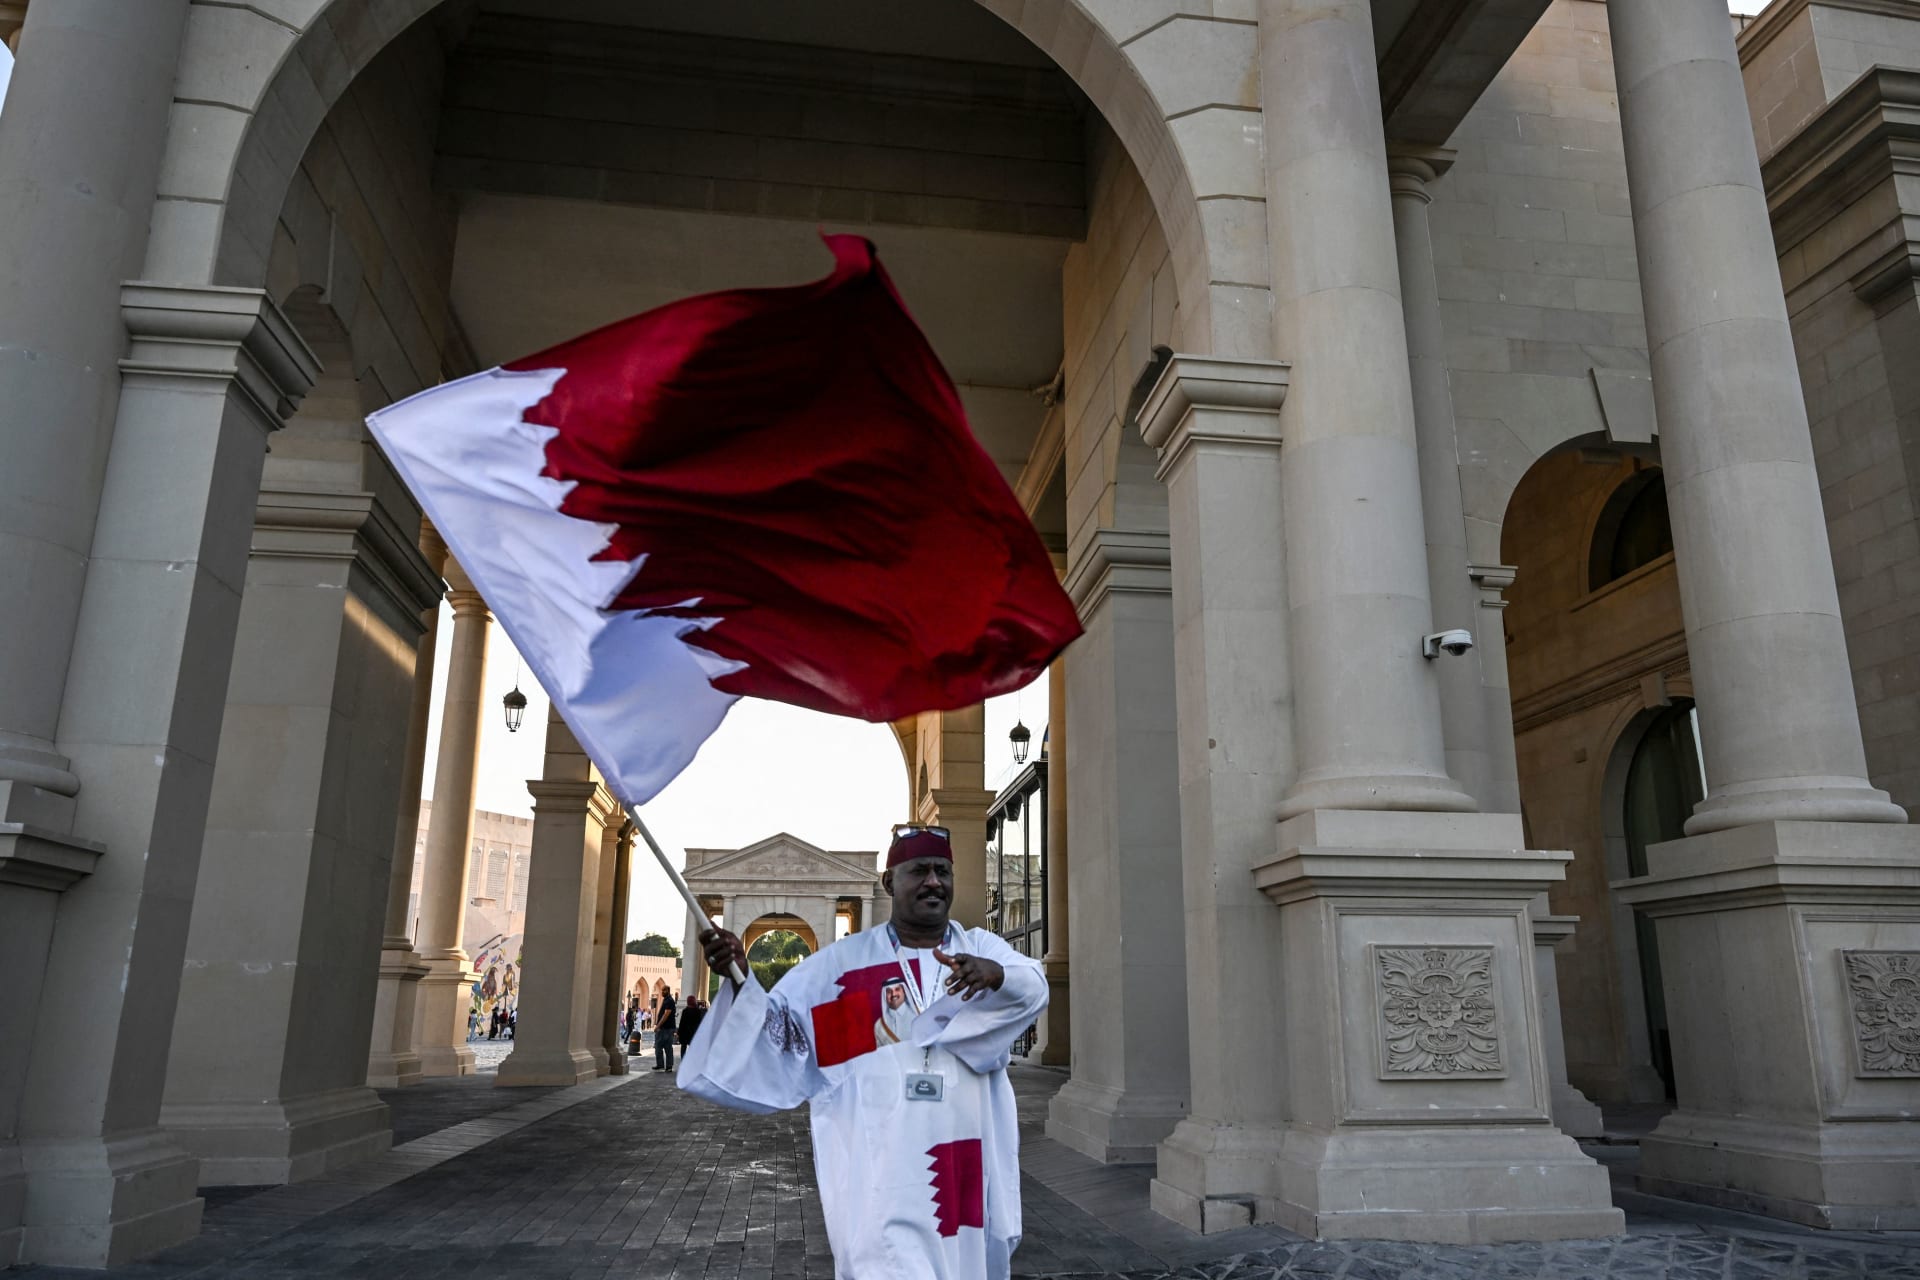 شيخة قطرية: العلاقات الدبلوماسية تقطع وتوصل أما الإنسانية إذا قطعت فلا تعود كالسابق